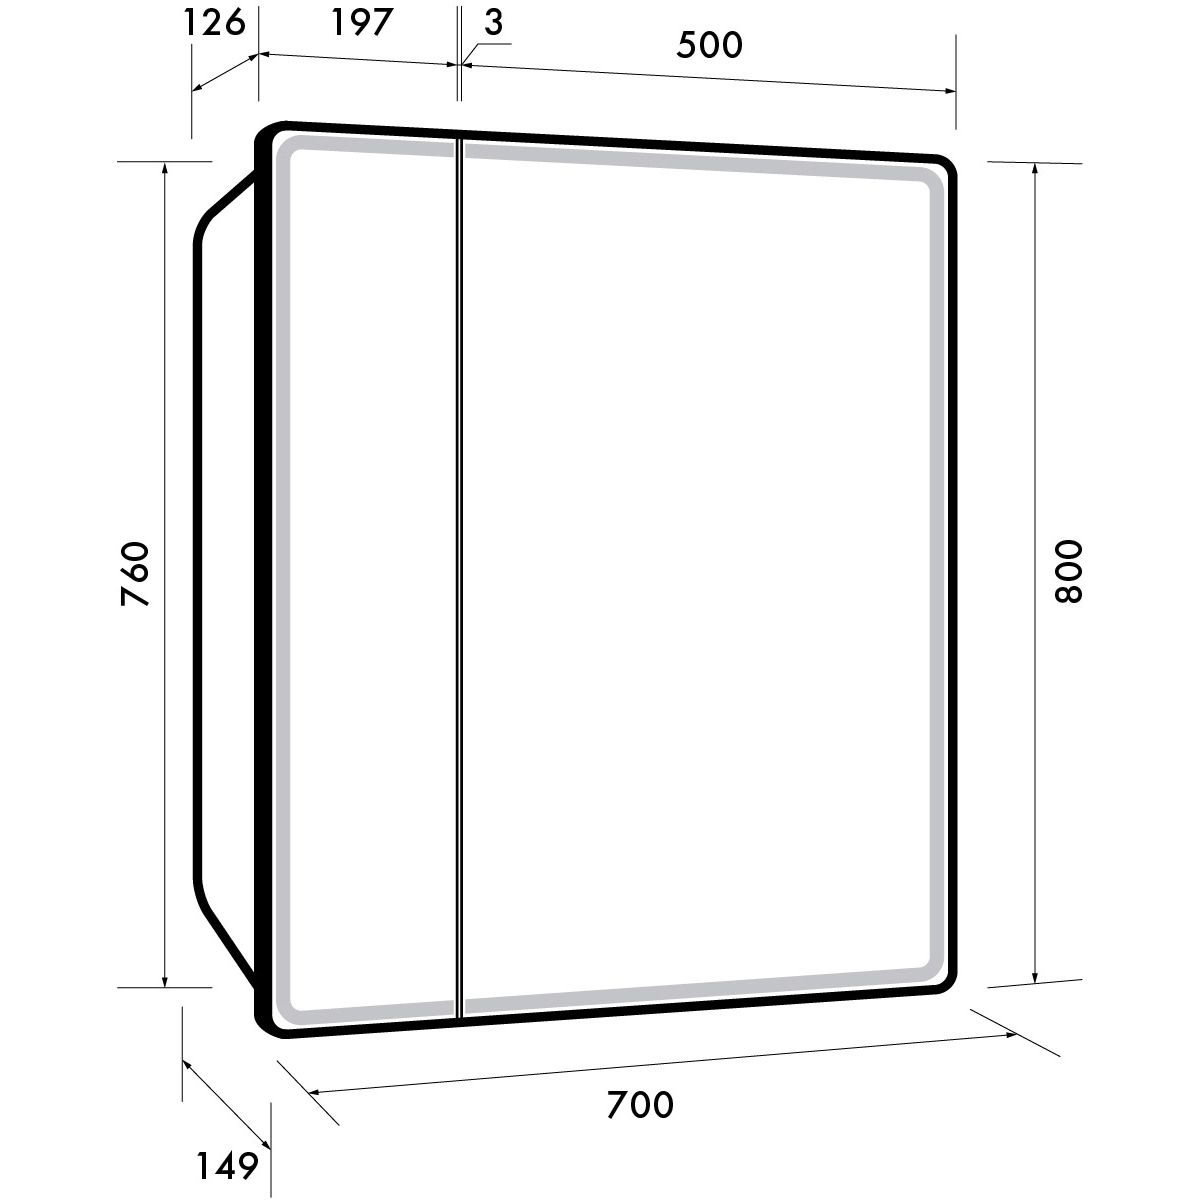 Зеркальный шкаф Dreja Point 70 см 2 дв., 2 стекл. полки, инфр. выключатель, LED, розетка, белый (99.9033)